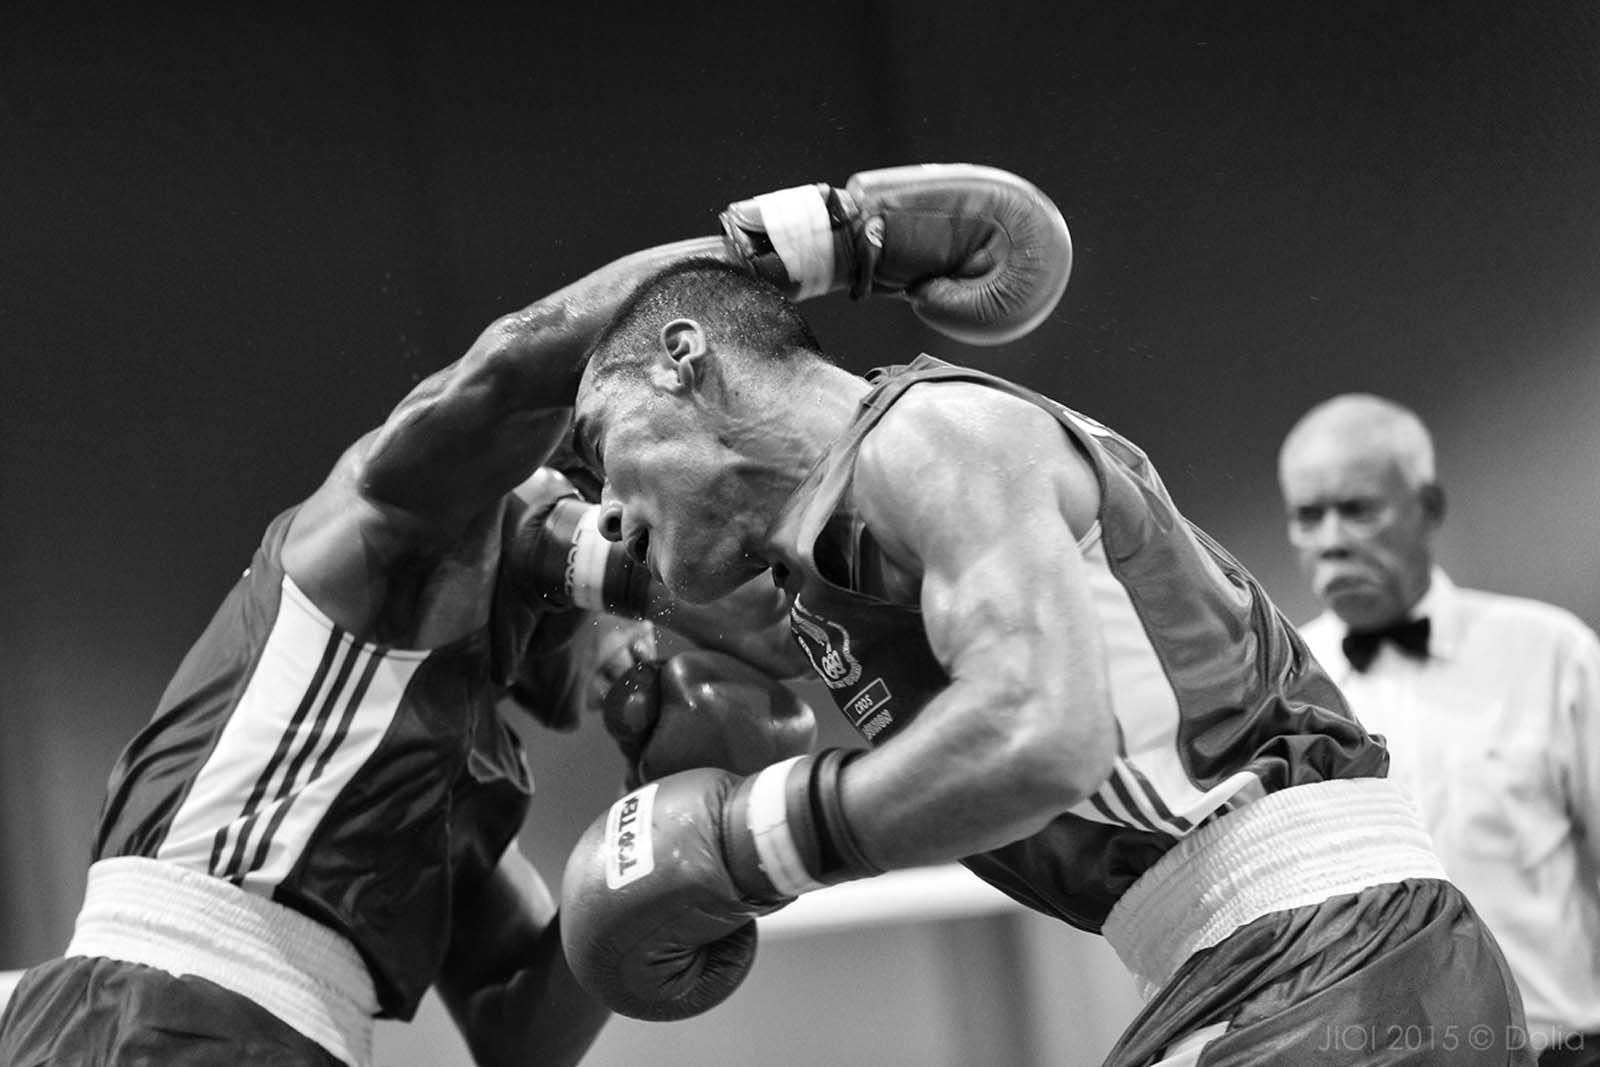 Jeux des Iles<br> Encore de belles images de boxe!